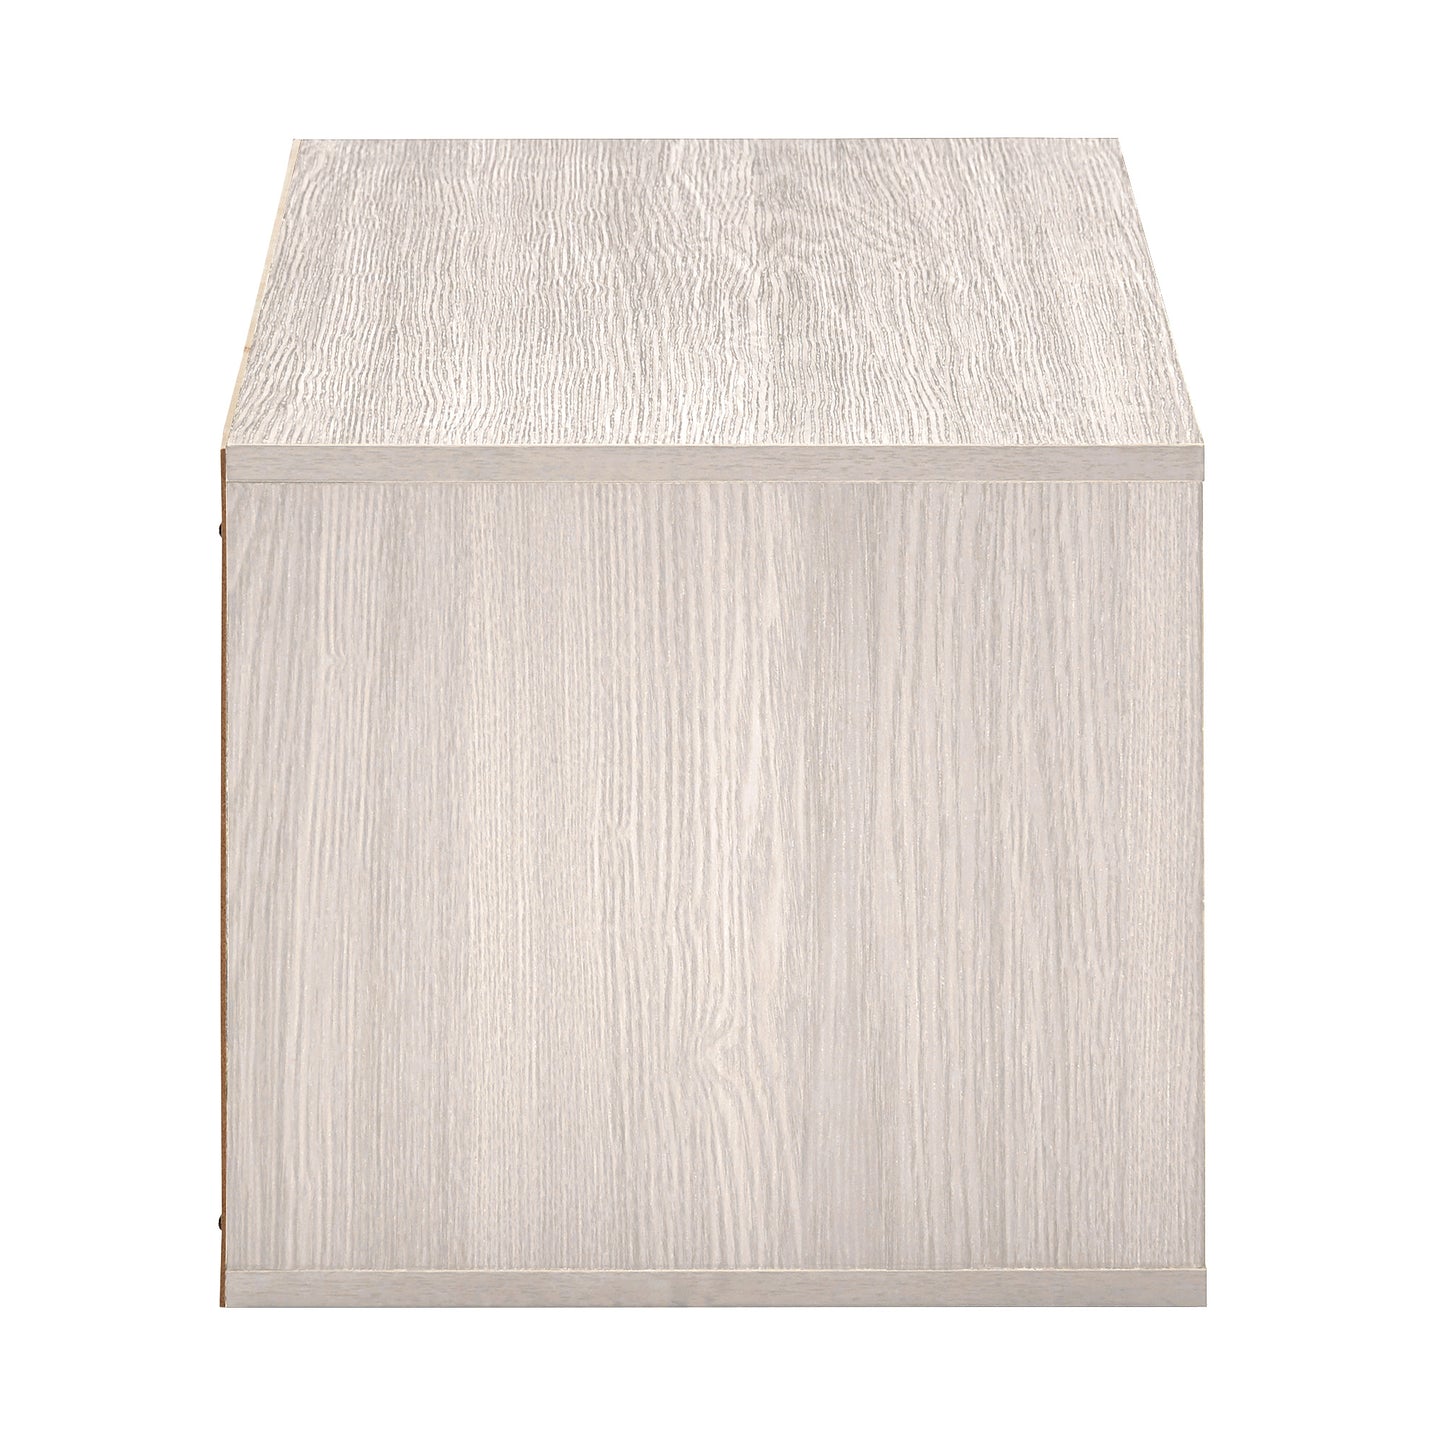 Stackable Storage Organizer - Large 1 - Shelf Cube, White Finish